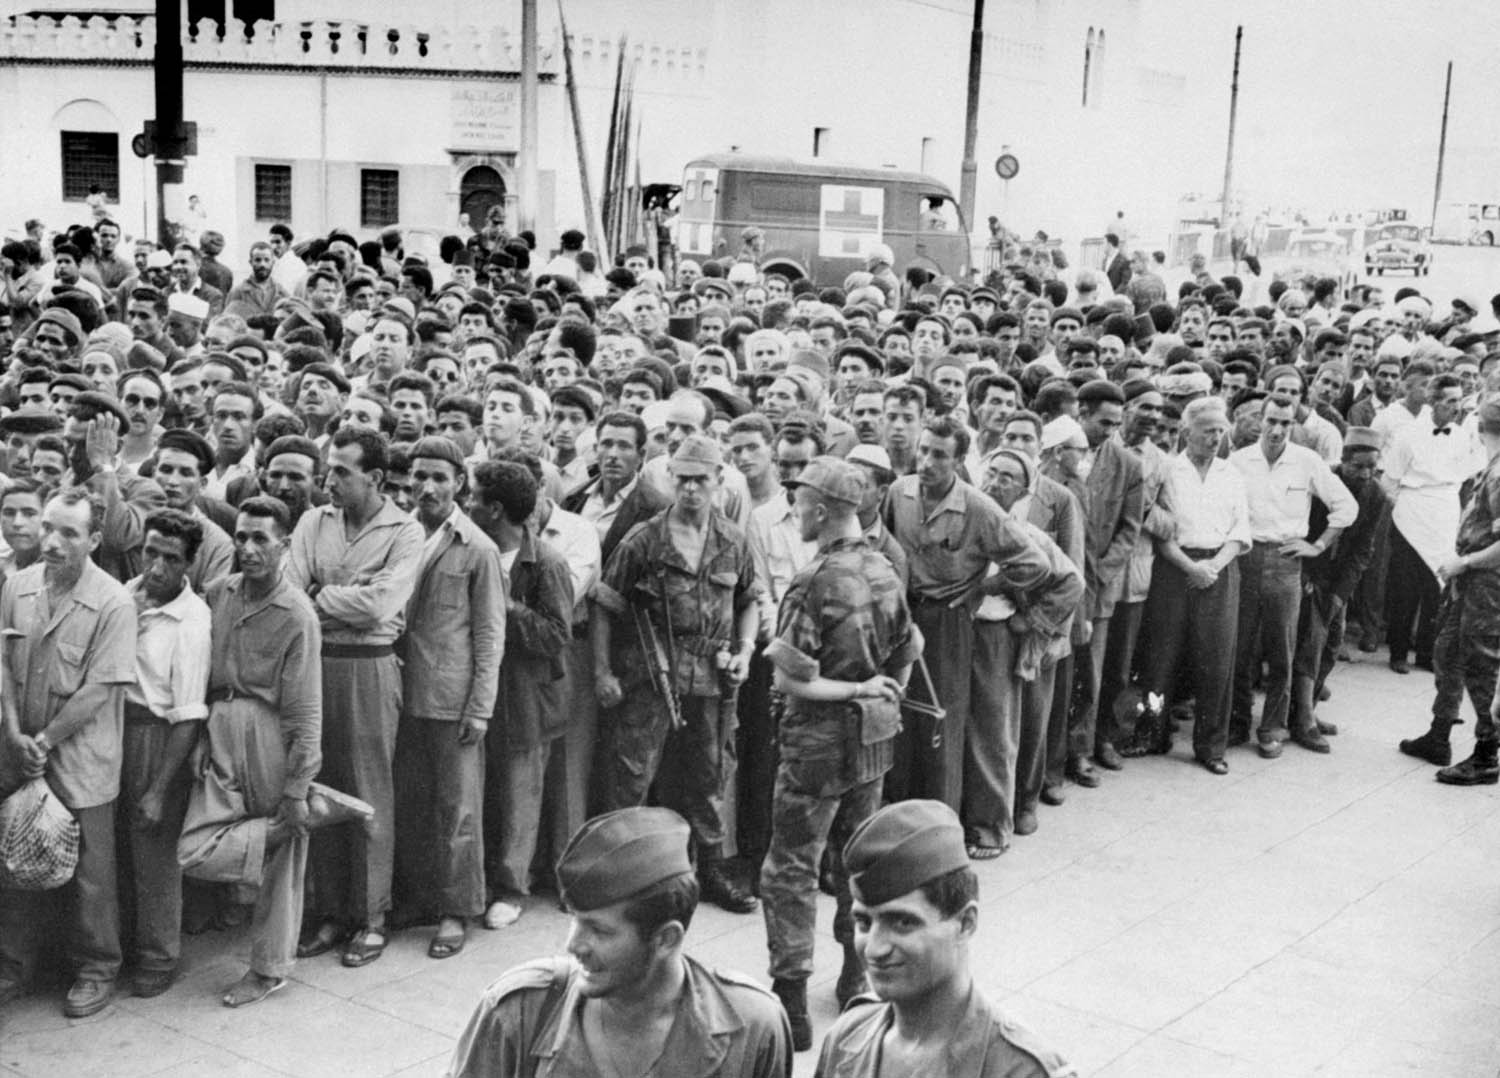 قوات فرنسية تعتقل المئات من الجزائريين (1957)